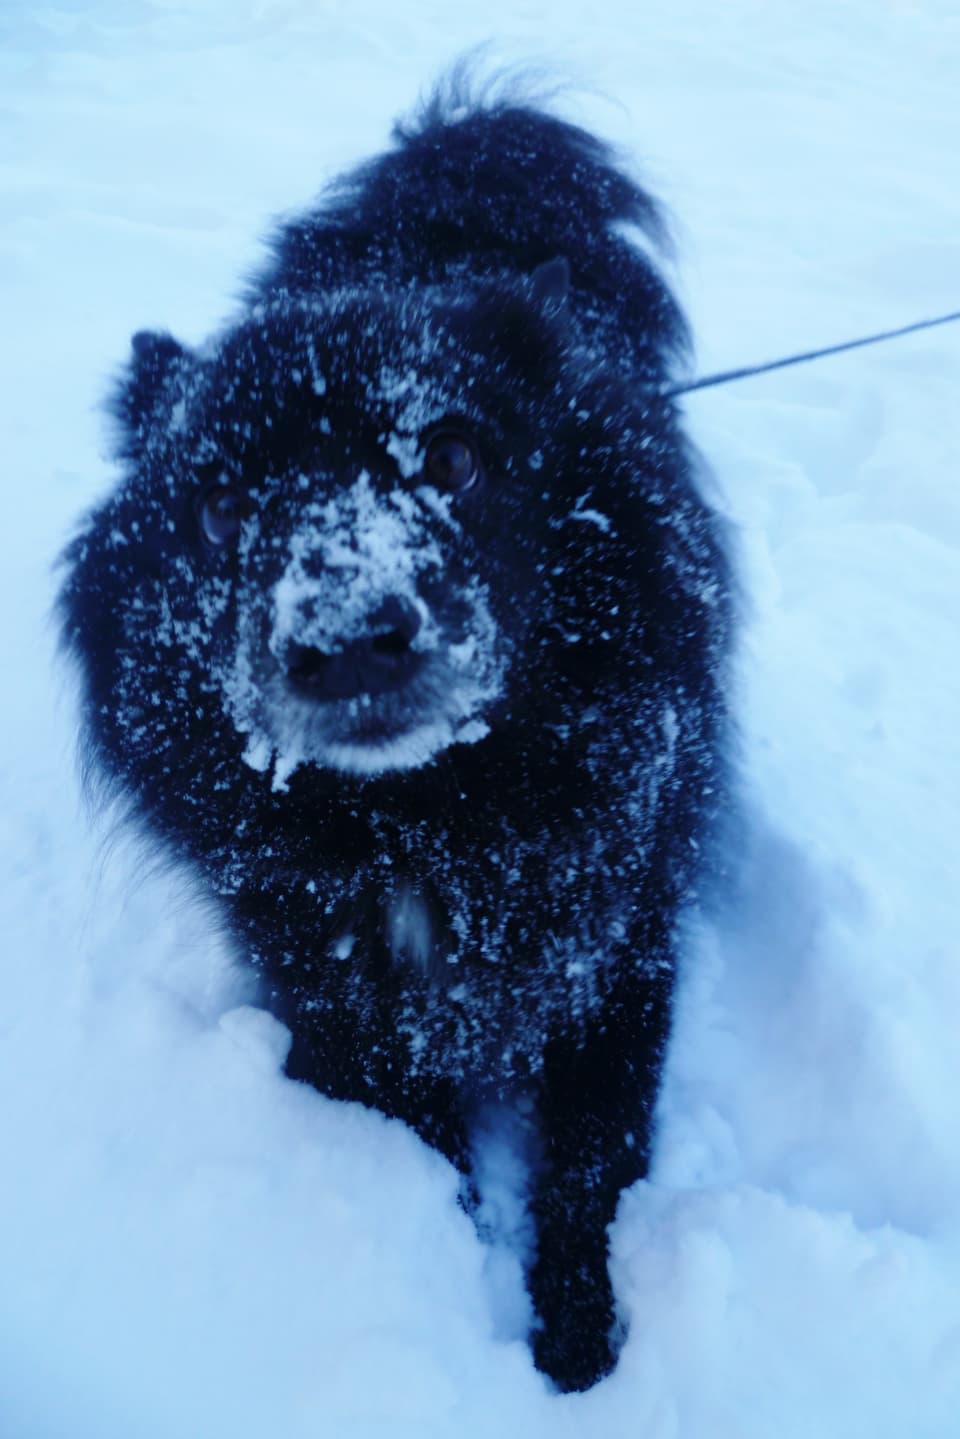 Hund an der Leine im Schnee.